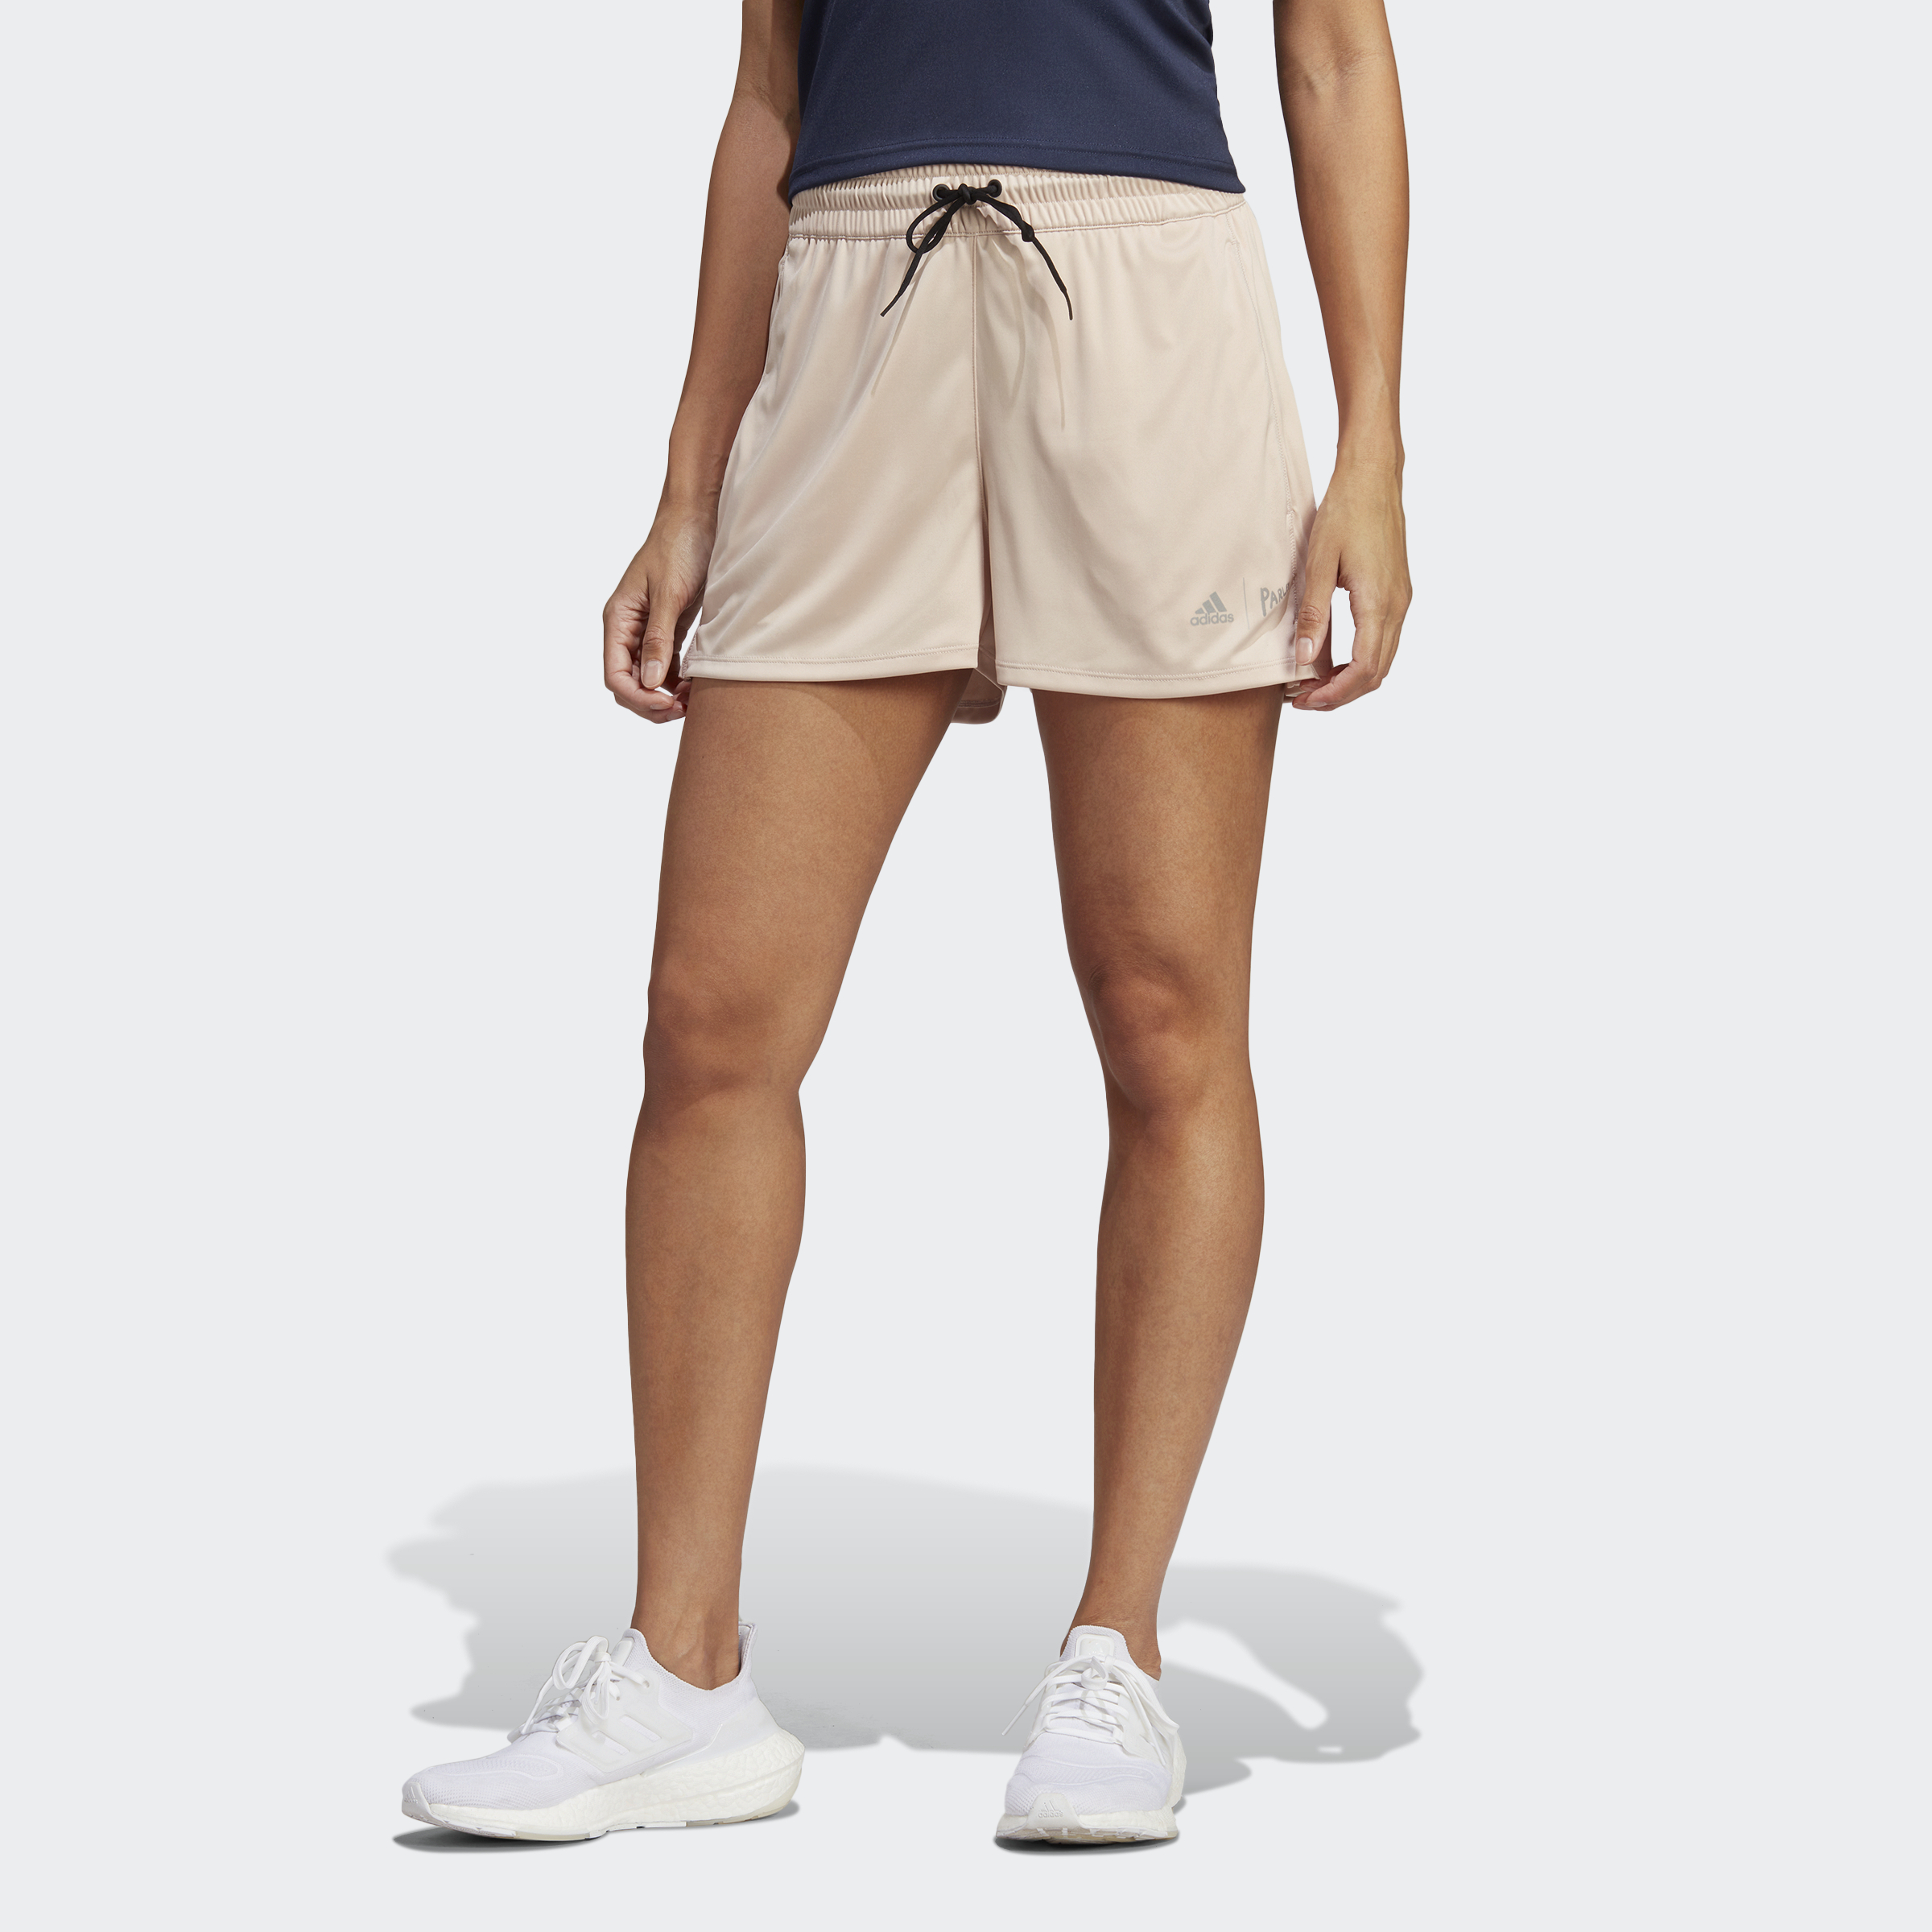 adidas x Parley Shorts | eBay